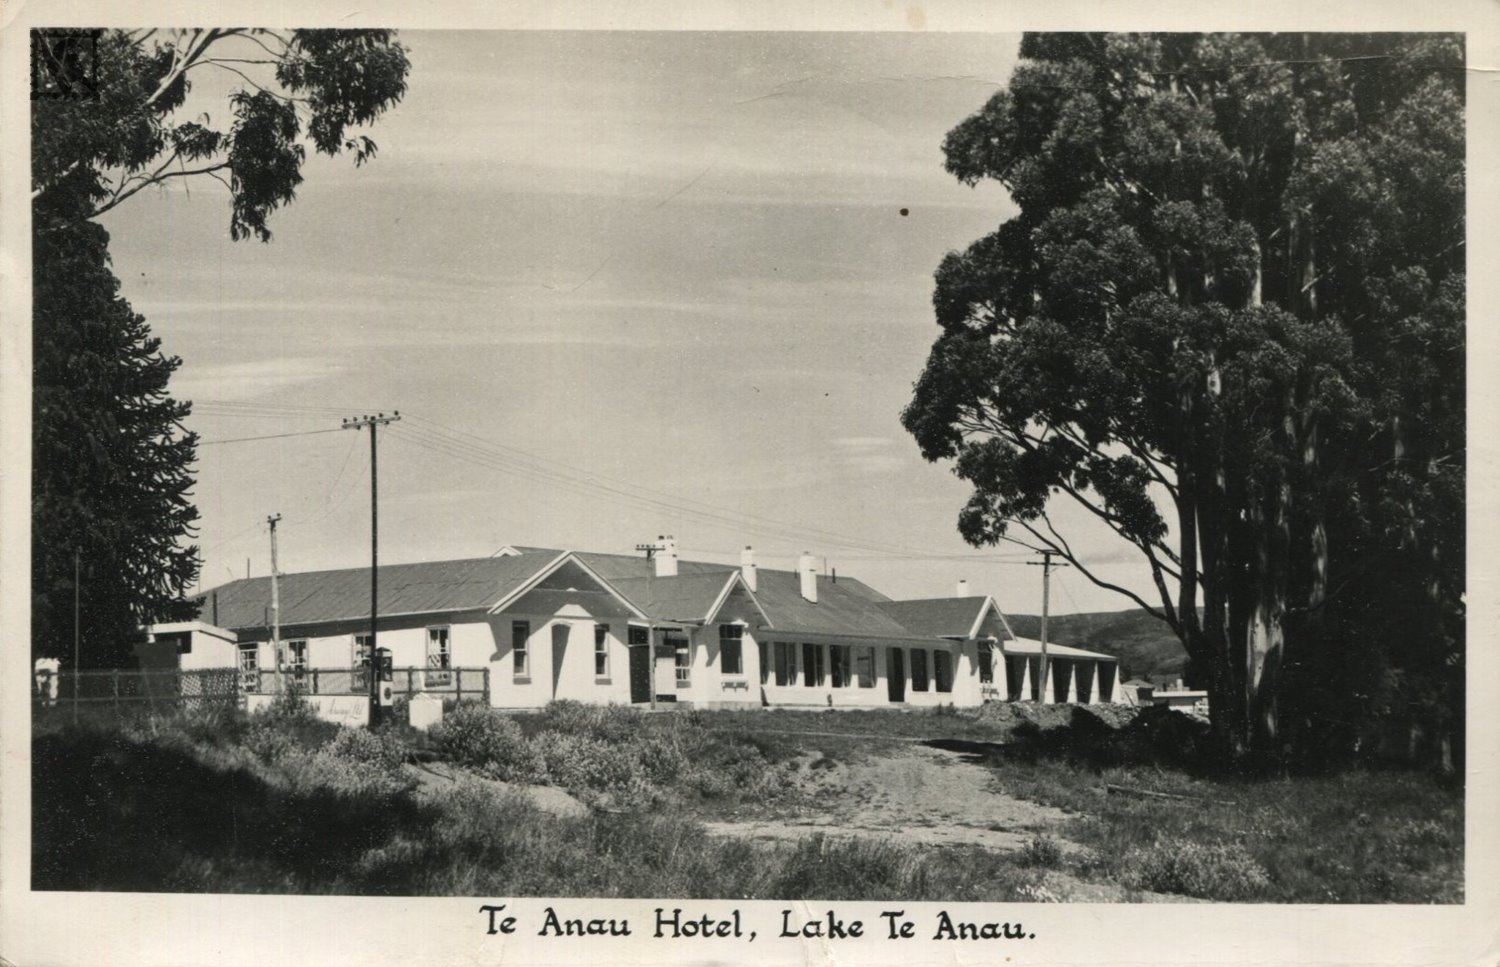 Lake Te Anau - Hotel